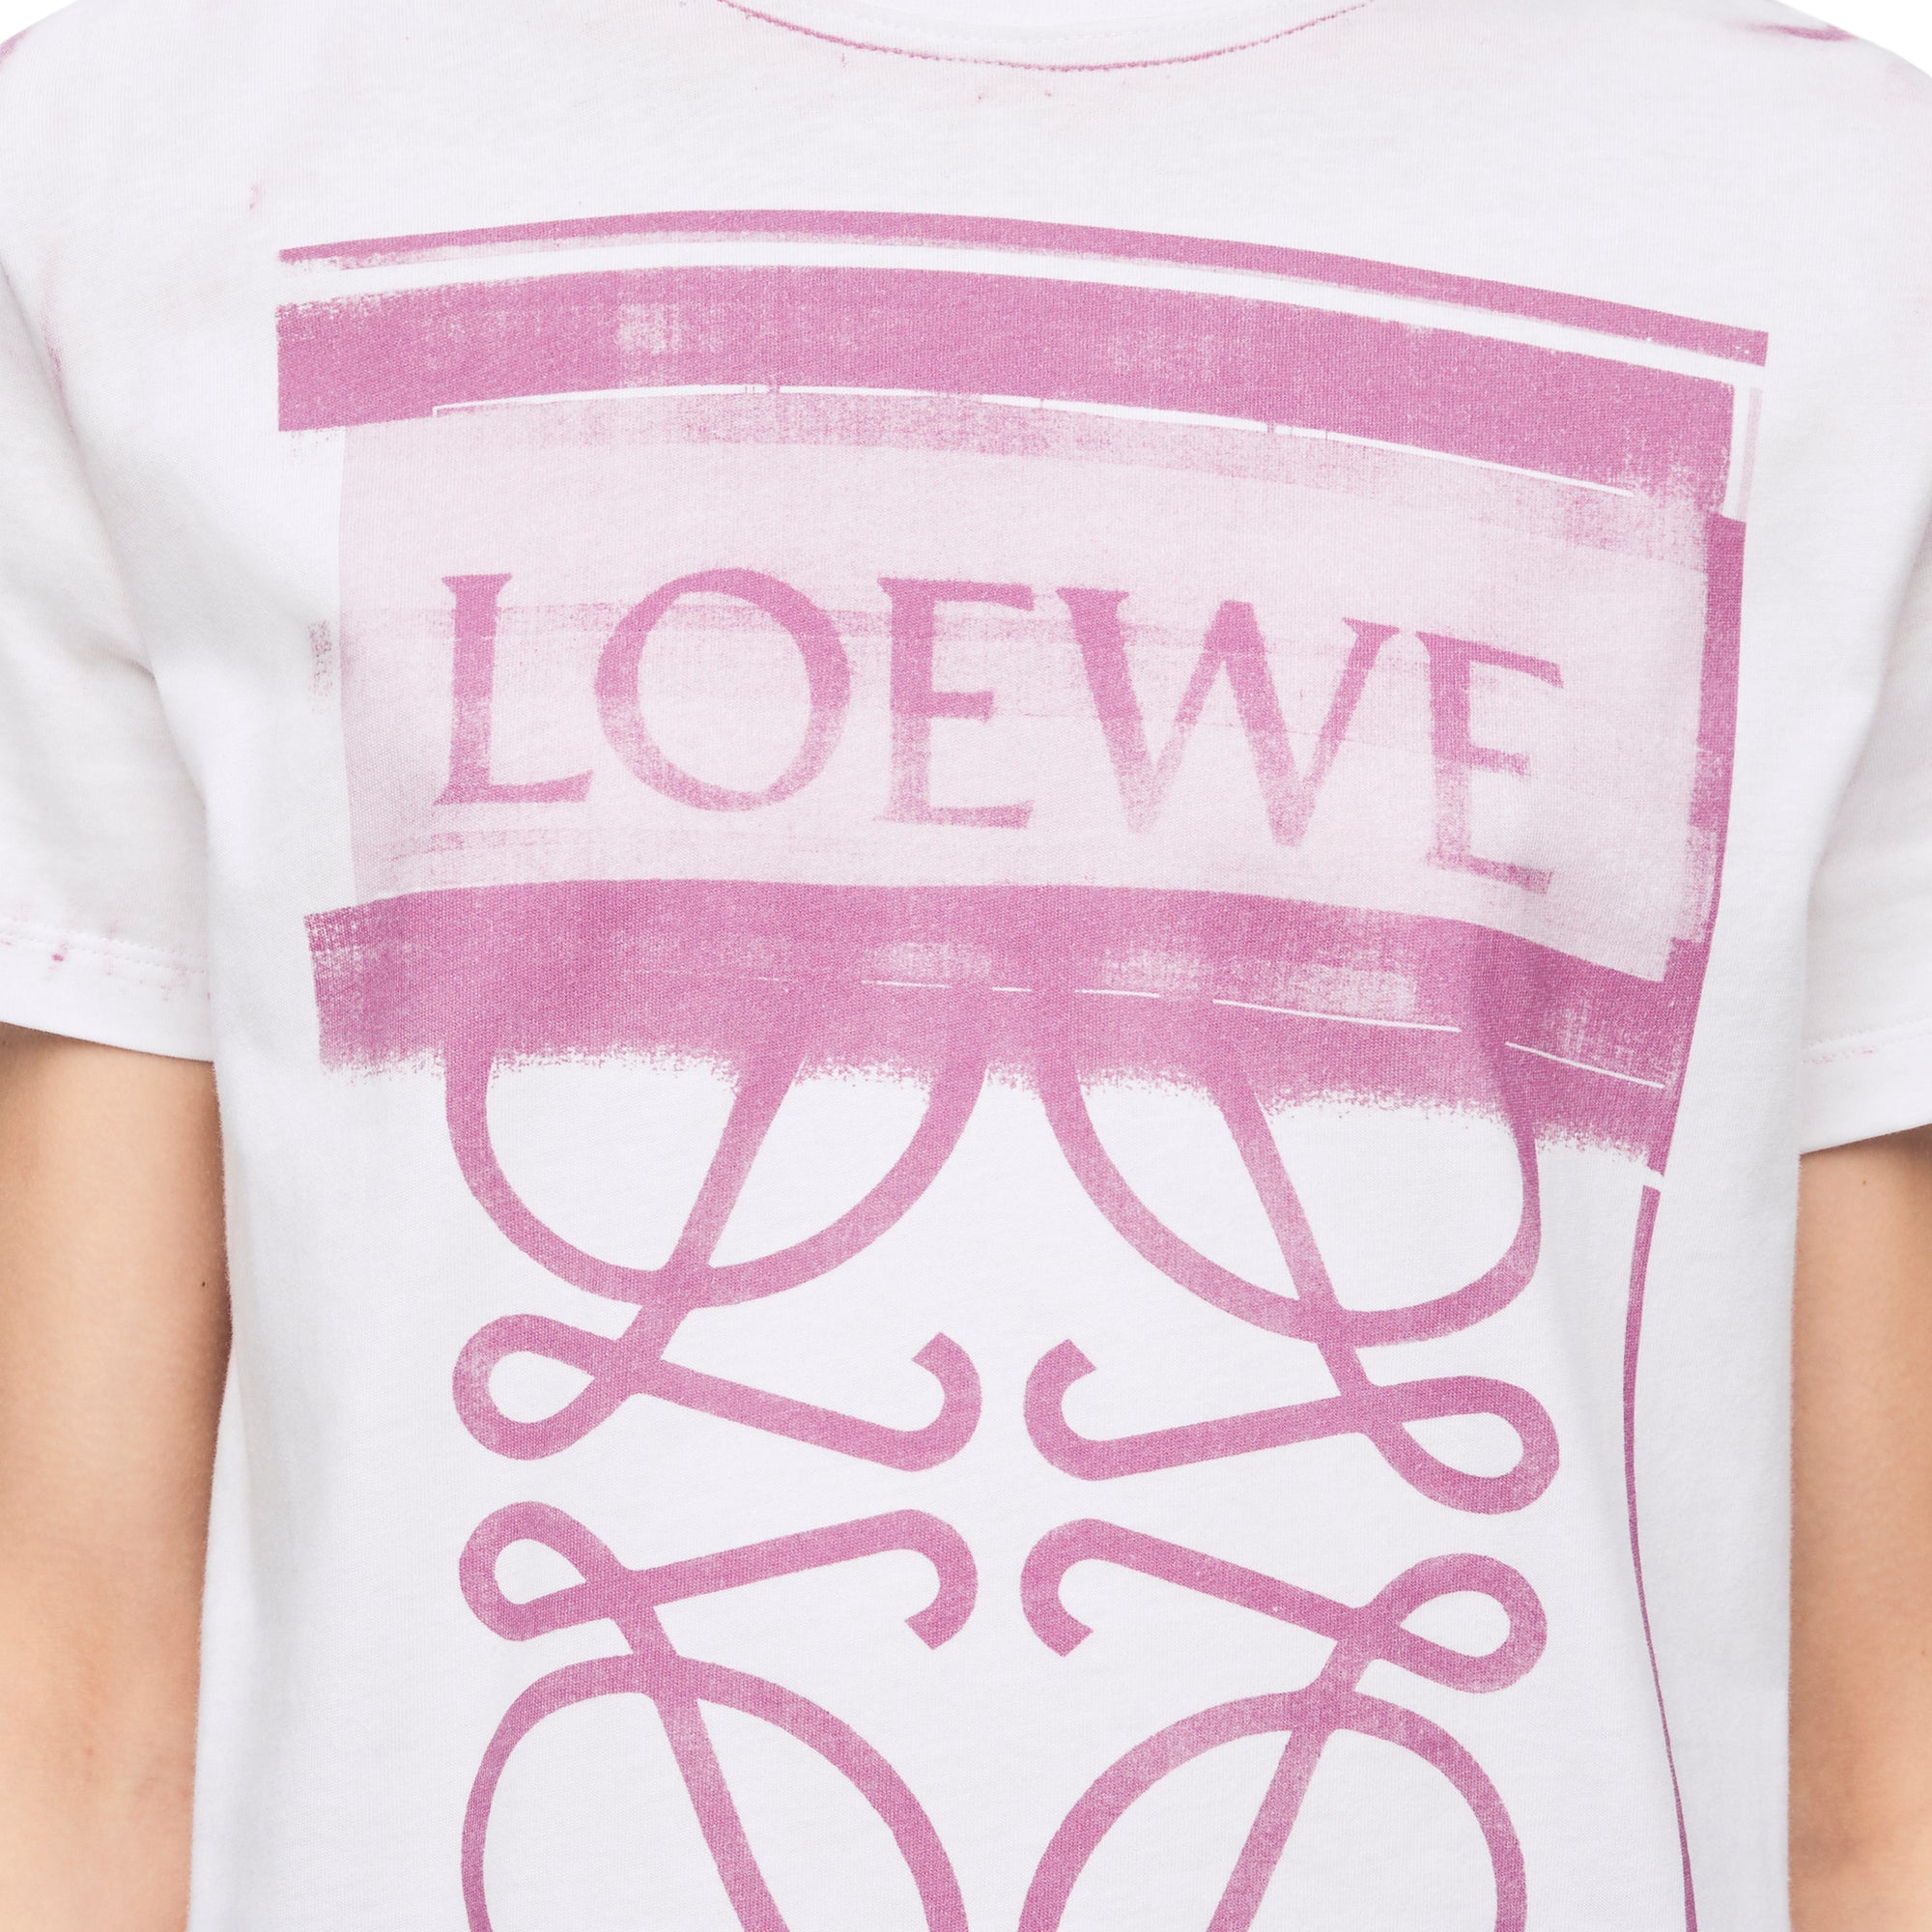 Loewe - Women’s Regular Fit T-Shirt - (White/Pink) view 5